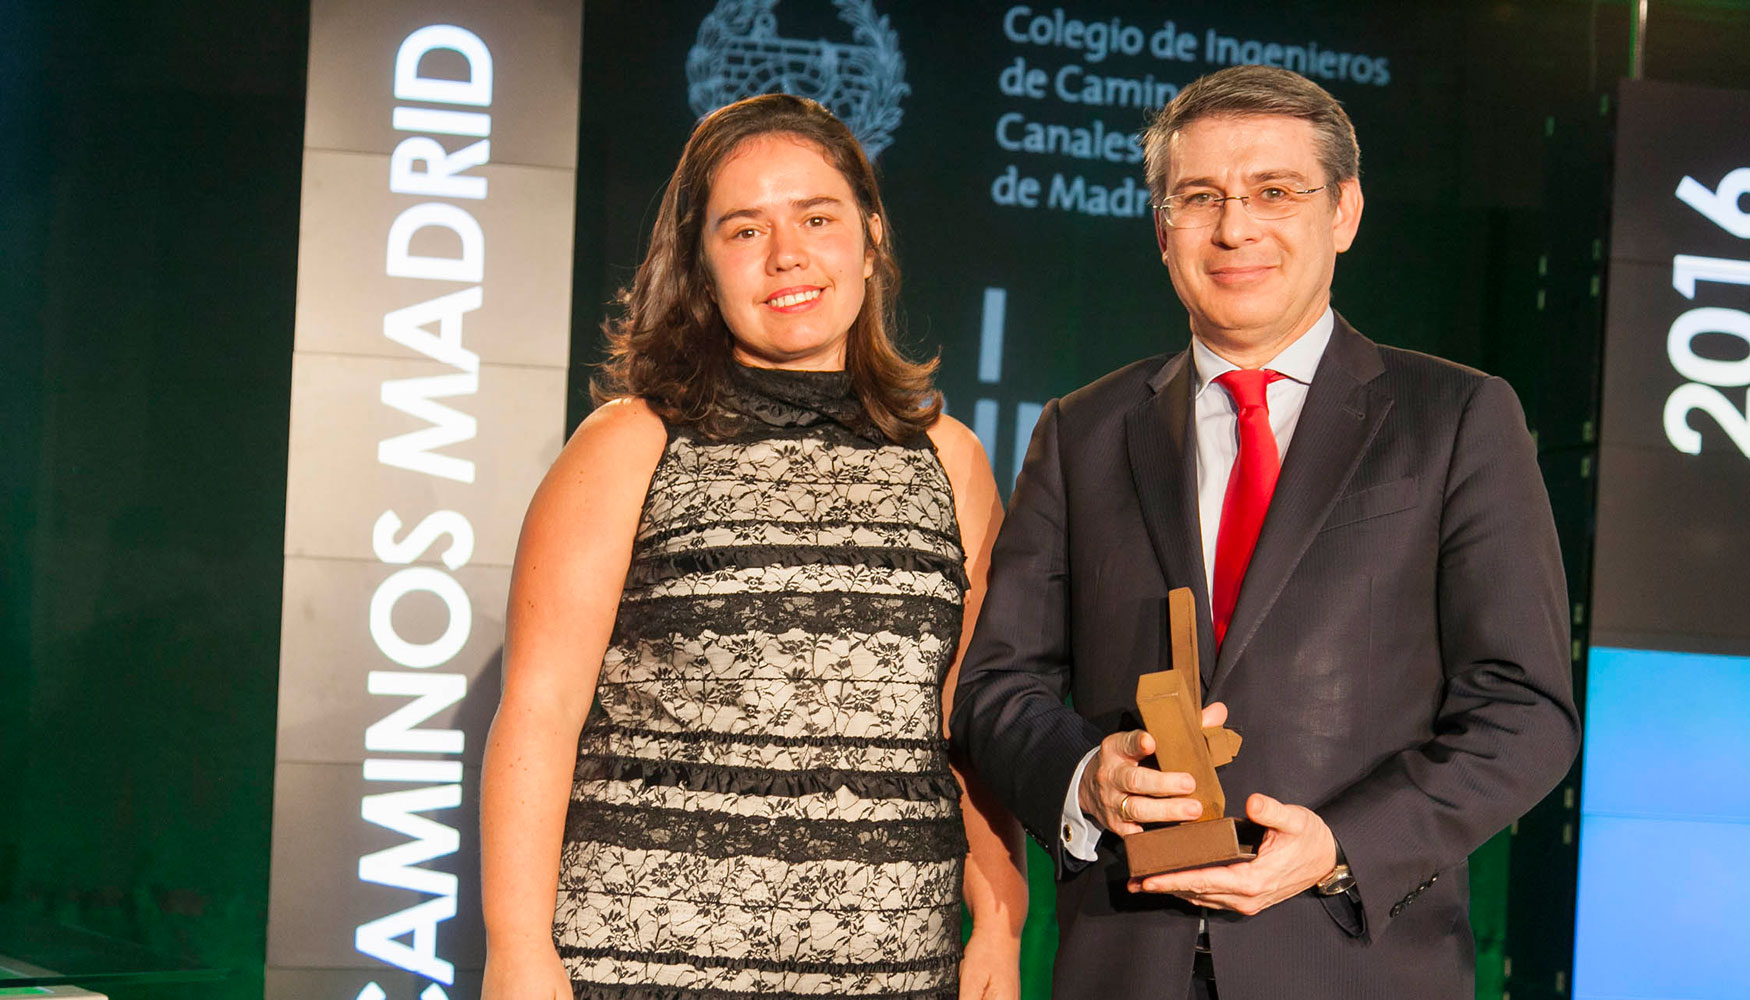 Entrega a FCC Construccin del premio a la sostenibilidad y la responsabilidad social por el Colegio de Ingenieros de Caminos, Canales y Puertos...